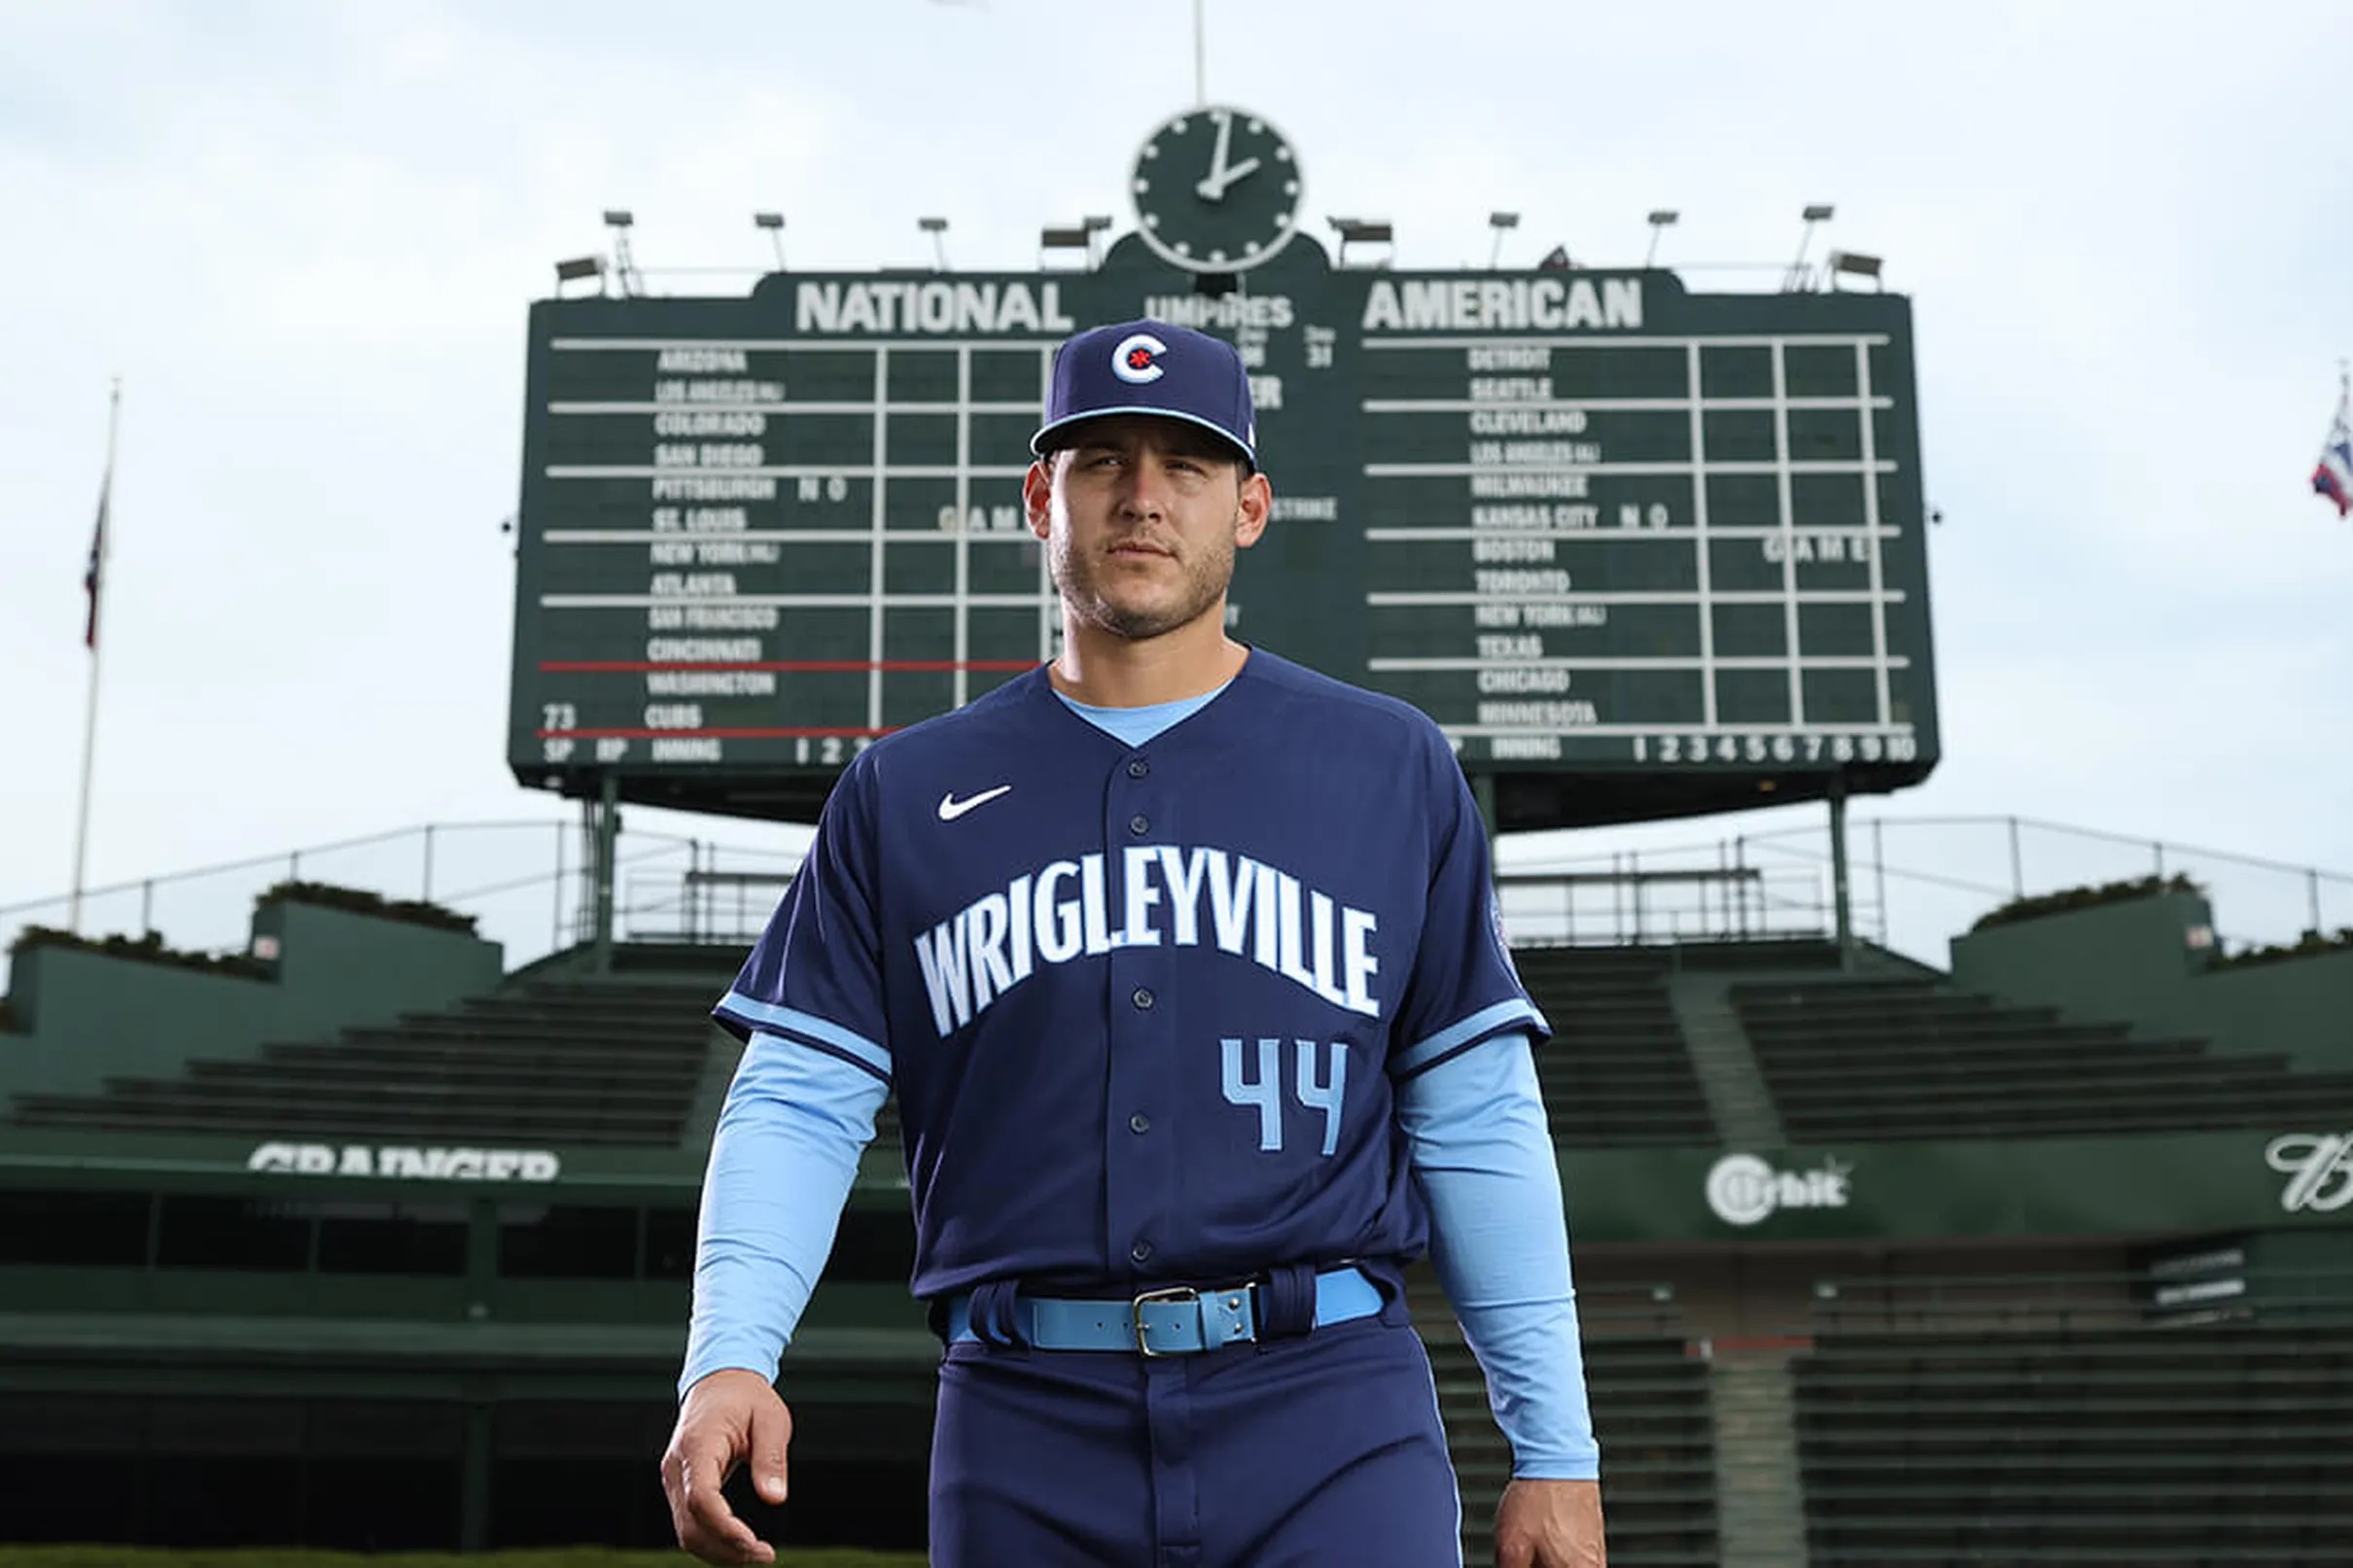 Cubs unveil their City Connect uniforms